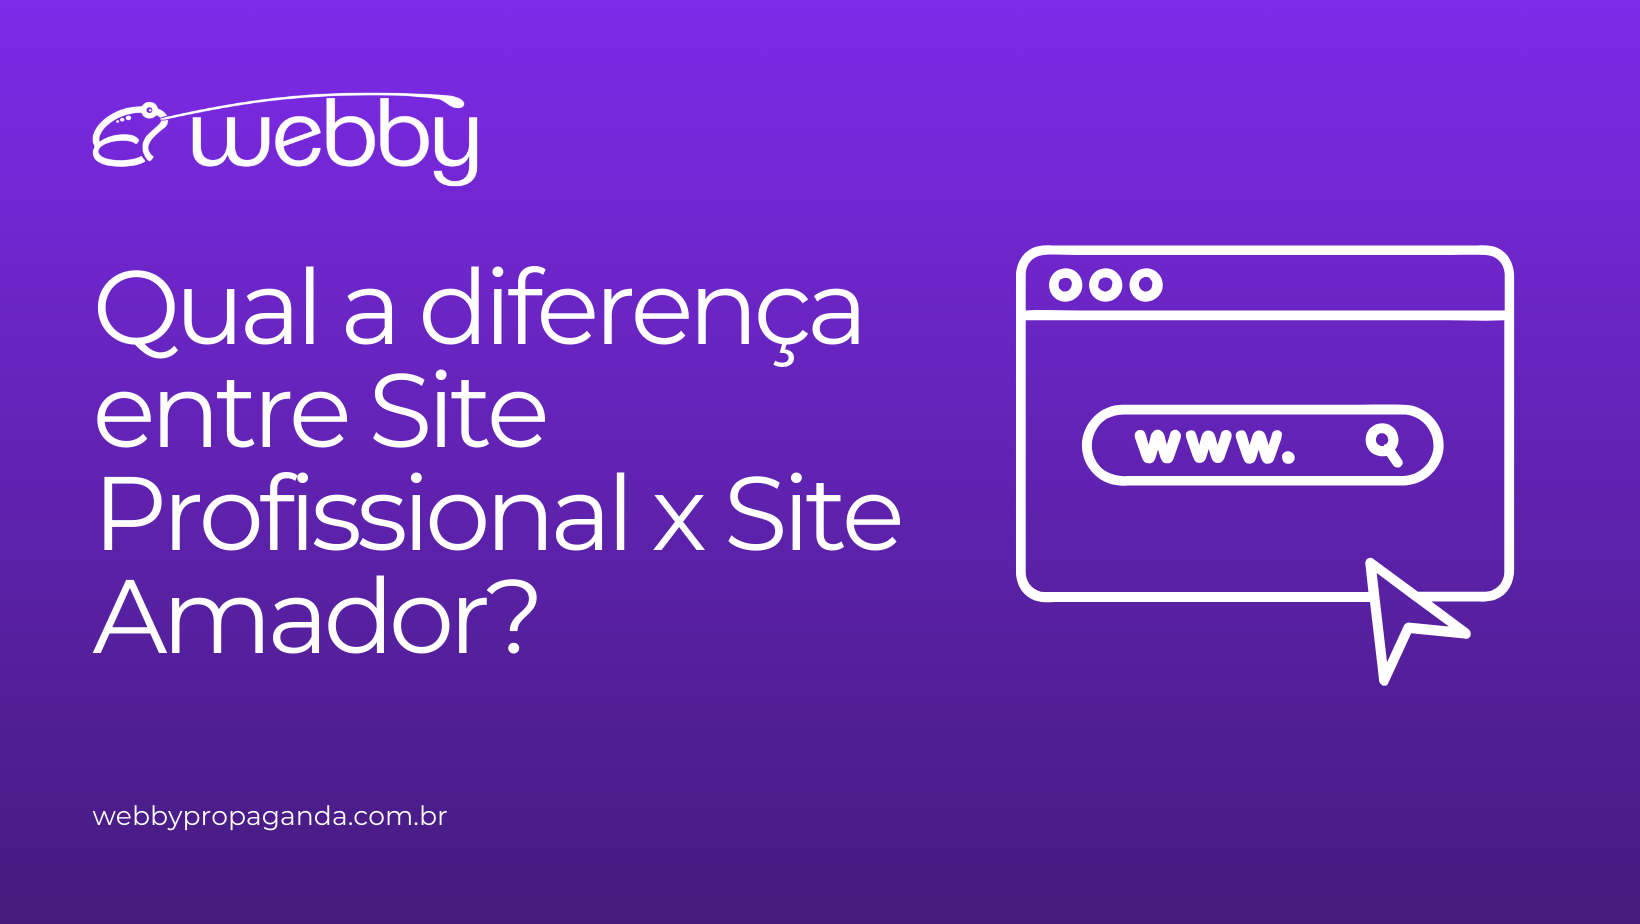 Qual a diferença entre Site Profissional x Site Amador?